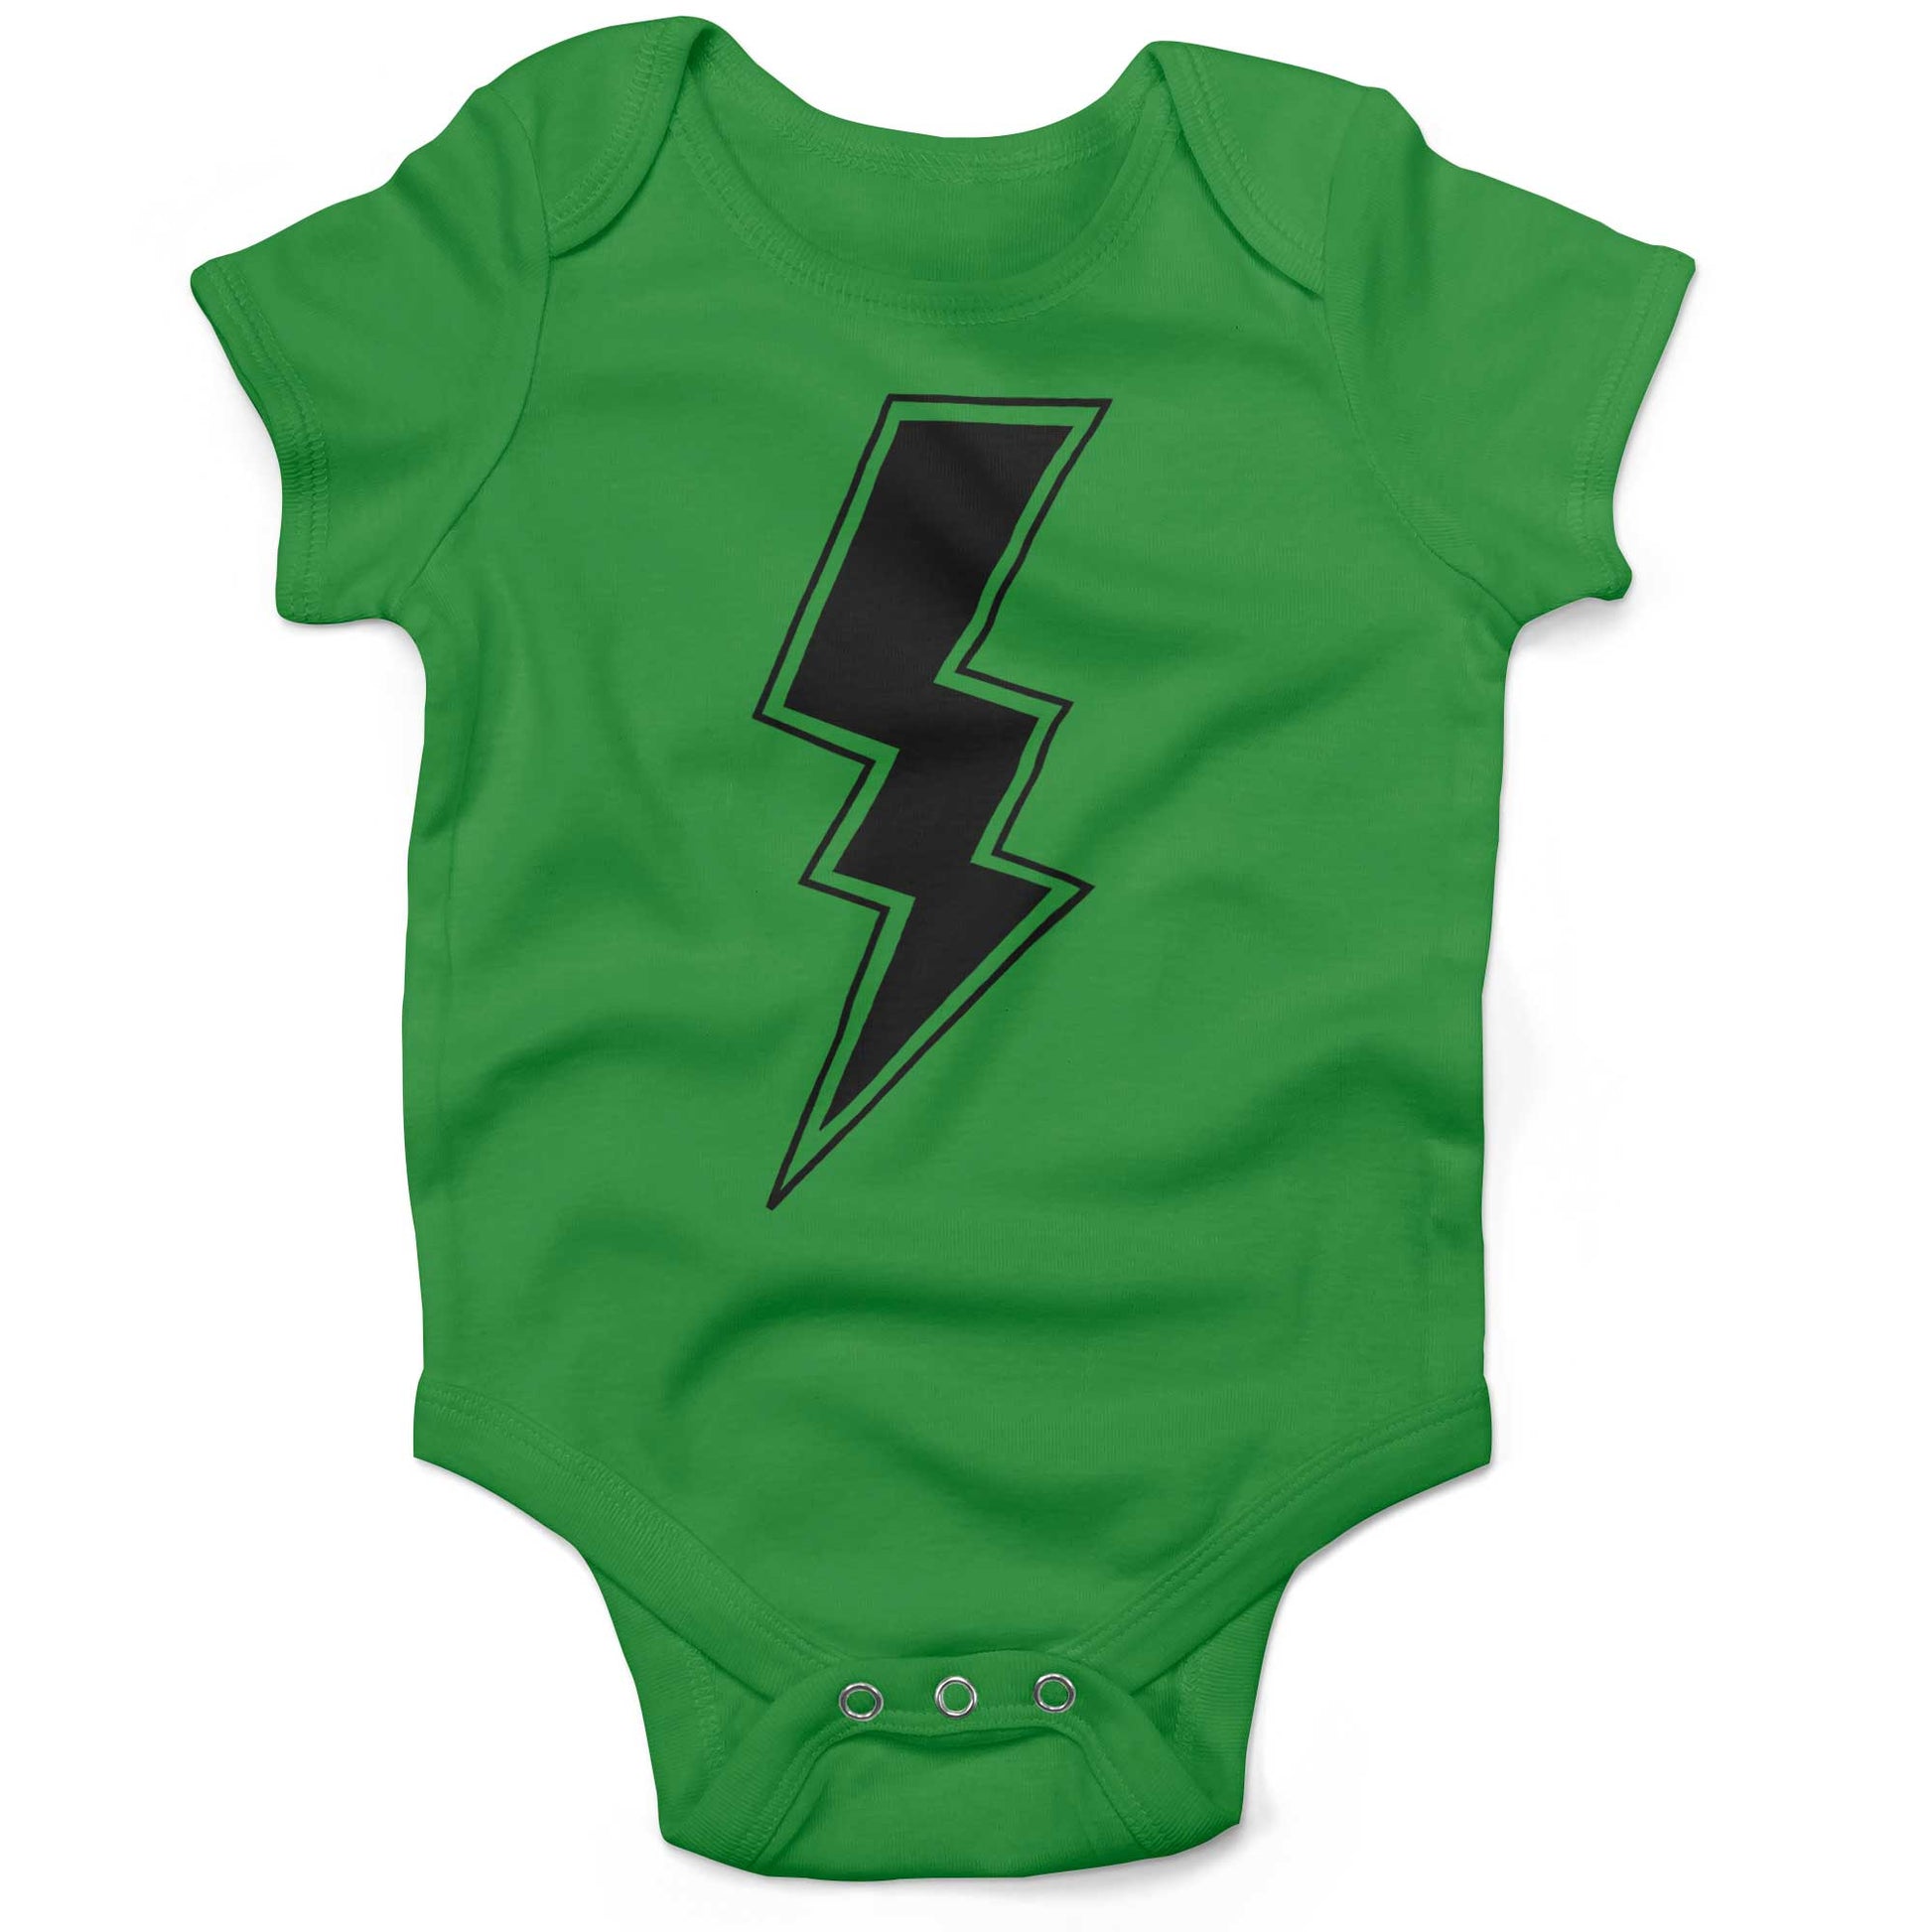 Giant Lightning Bolt Infant Bodysuit or Raglan Baby Tee-Grass Green-3-6 months